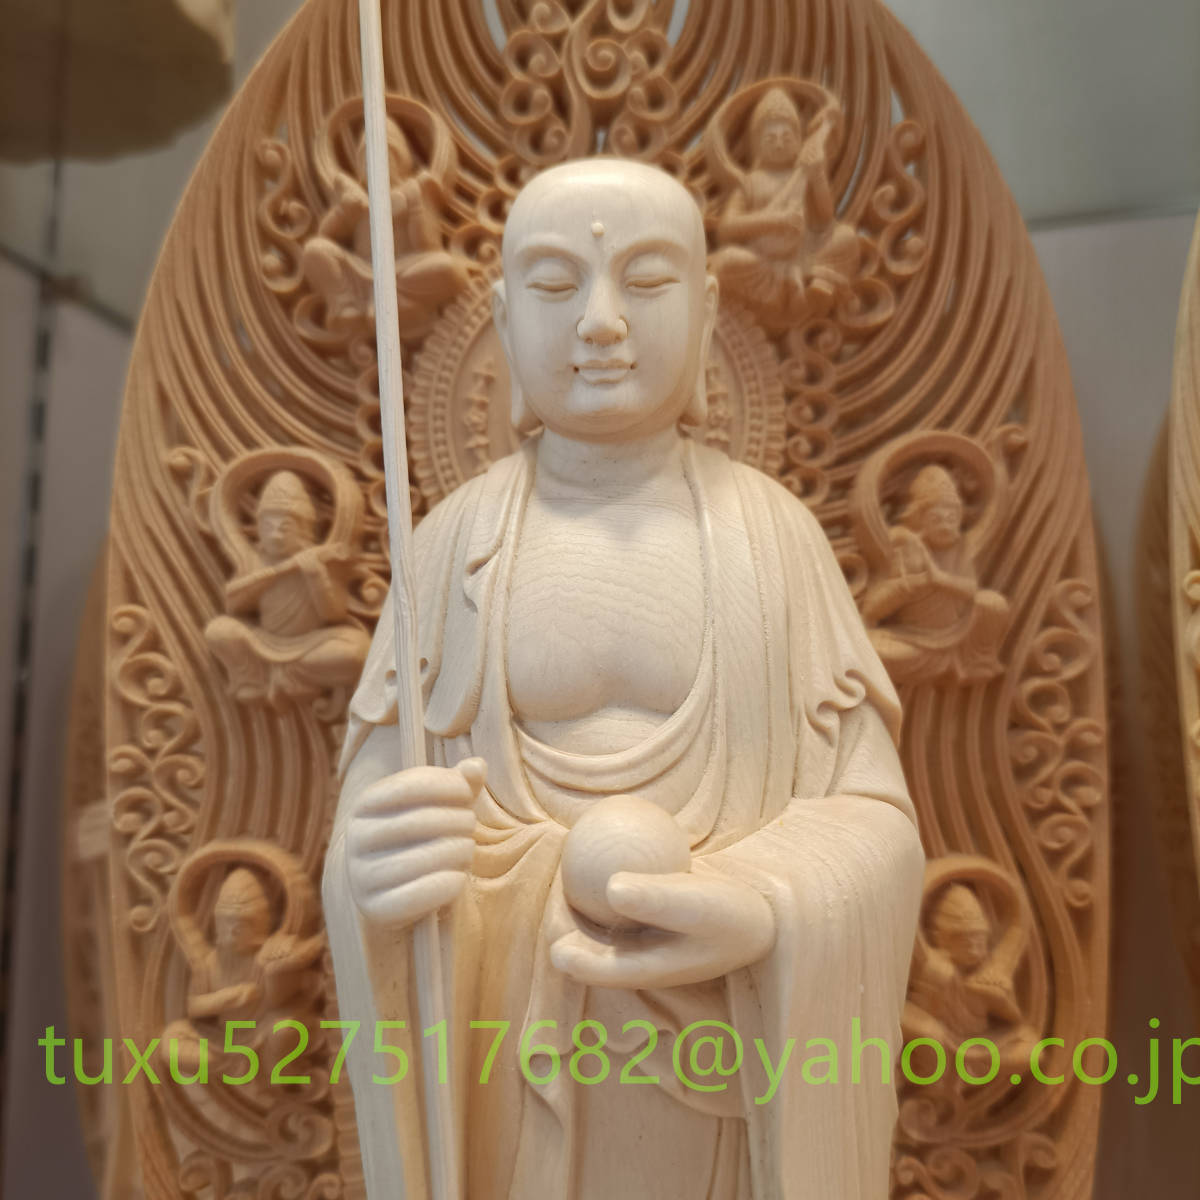 仏教美術 大型43cm 総檜材 仏教工芸品 木彫仏教 精密彫刻 娑婆三聖 